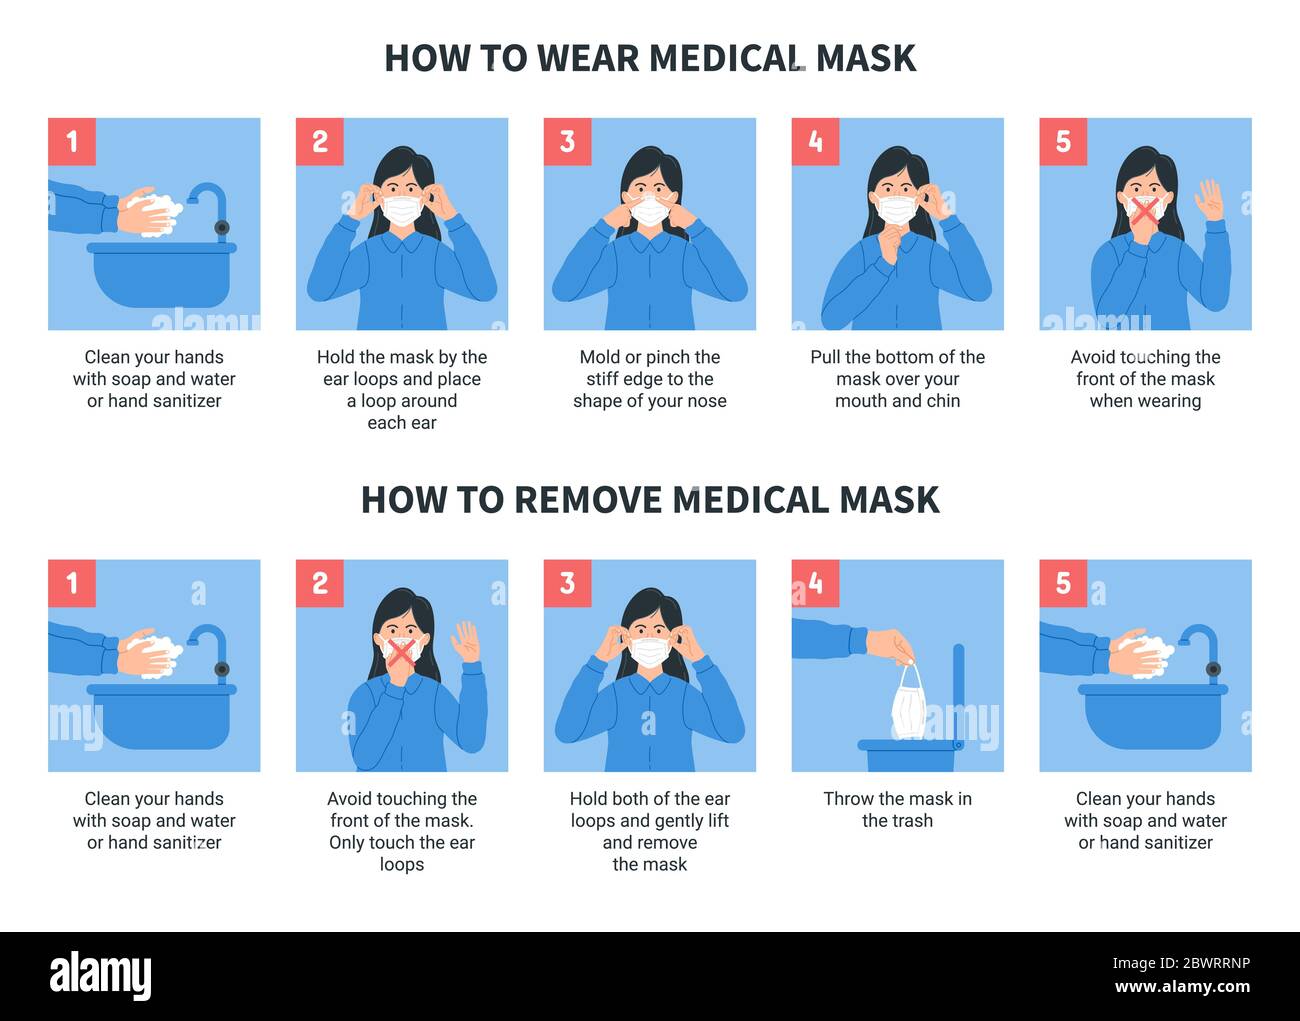 Come indossare e rimuovere correttamente la maschera medica. Illustrazione infografica dettagliata di come indossare e rimuovere una maschera chirurgica. Illustrazione Vettoriale